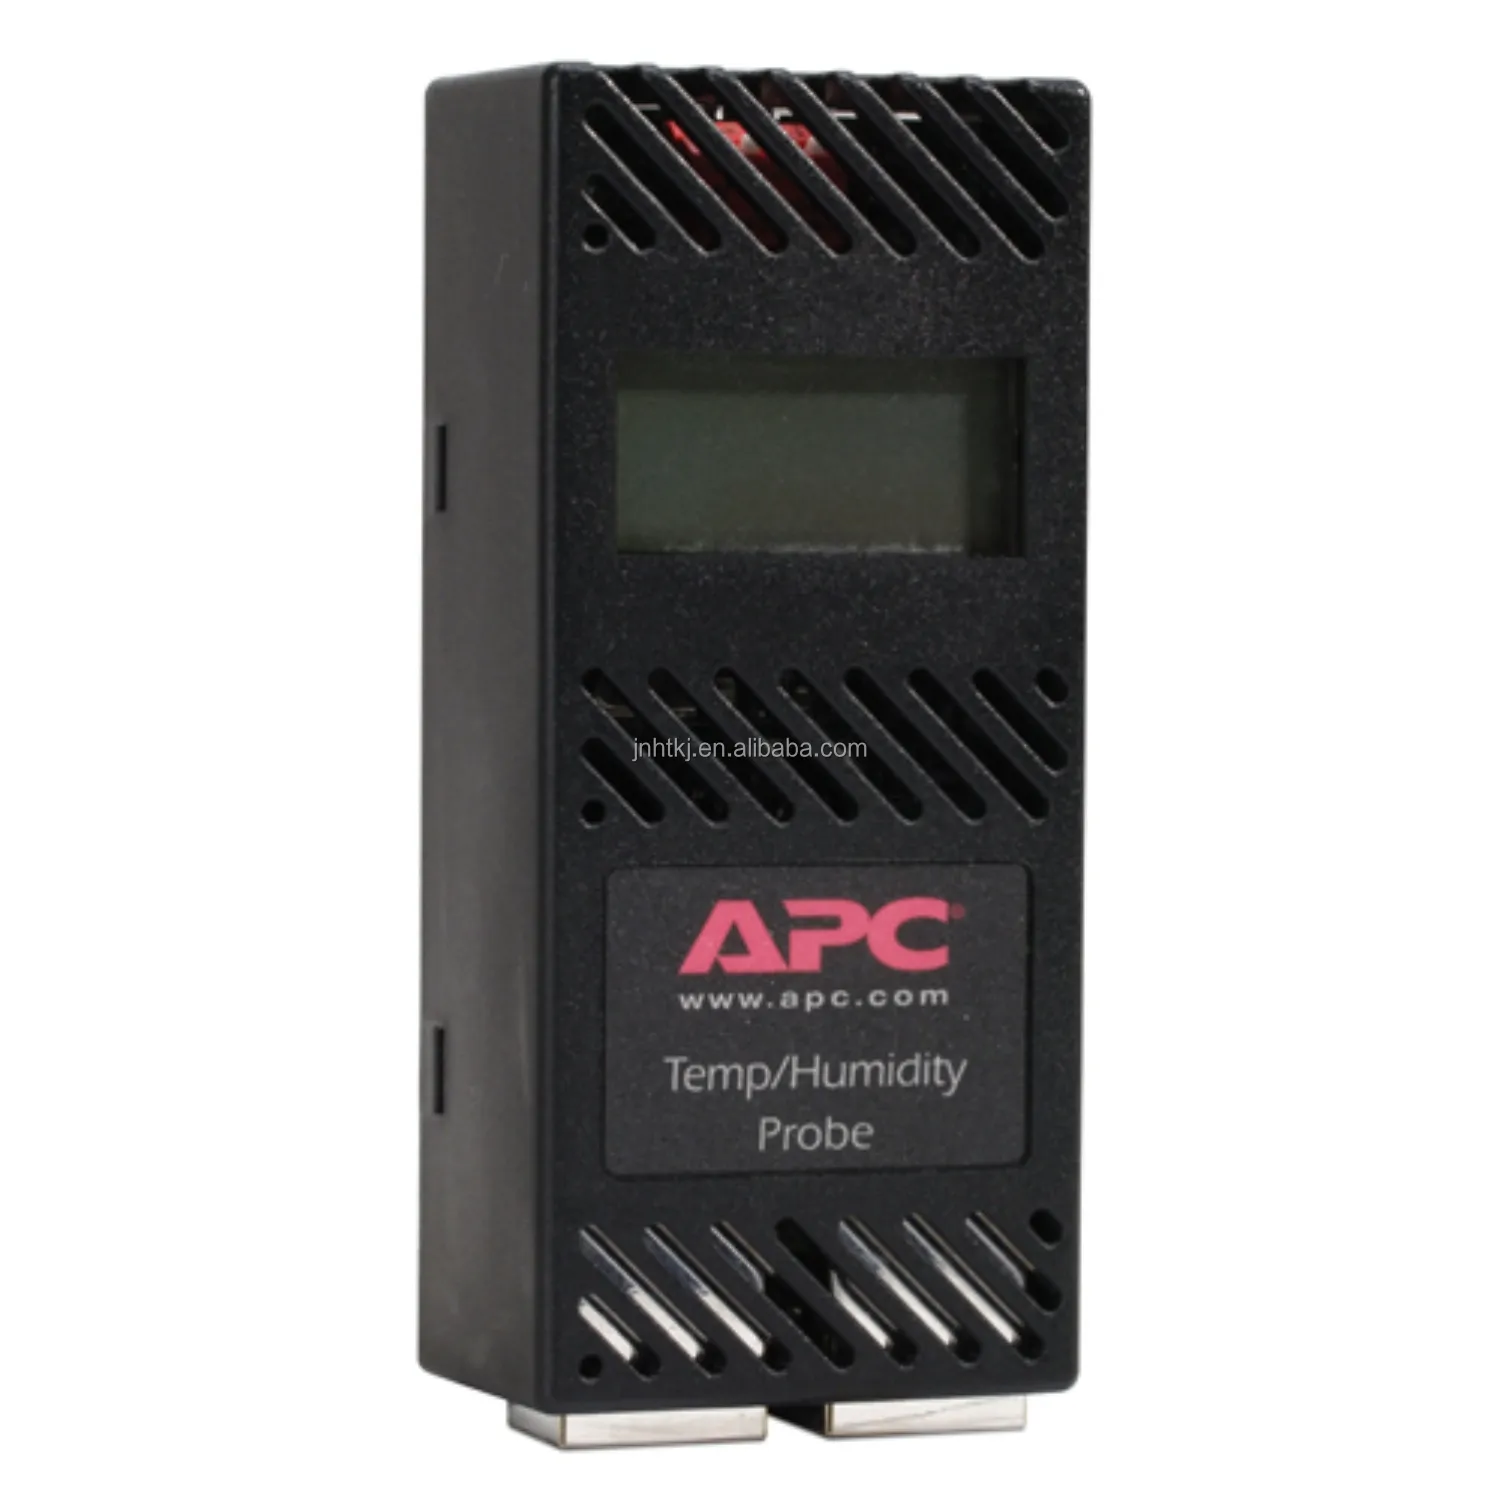 SE-APC AP9520TH APC Temperature Humidity Sensor With Display NetBotz Sensors